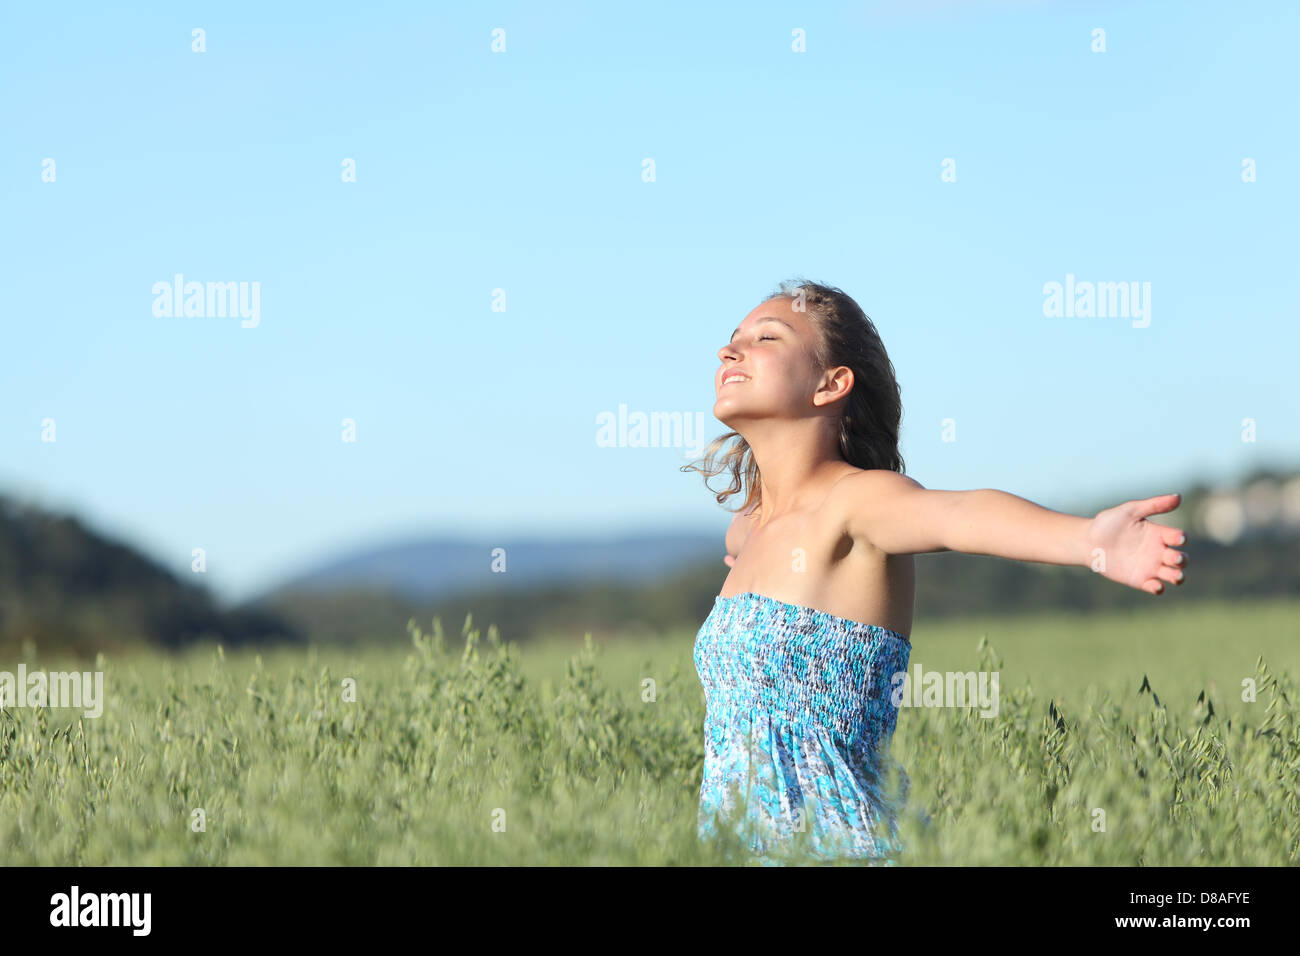 Bella donna felice di respirazione con bracci sollevati in un verde prato d'avena con il blu del cielo in background Foto Stock